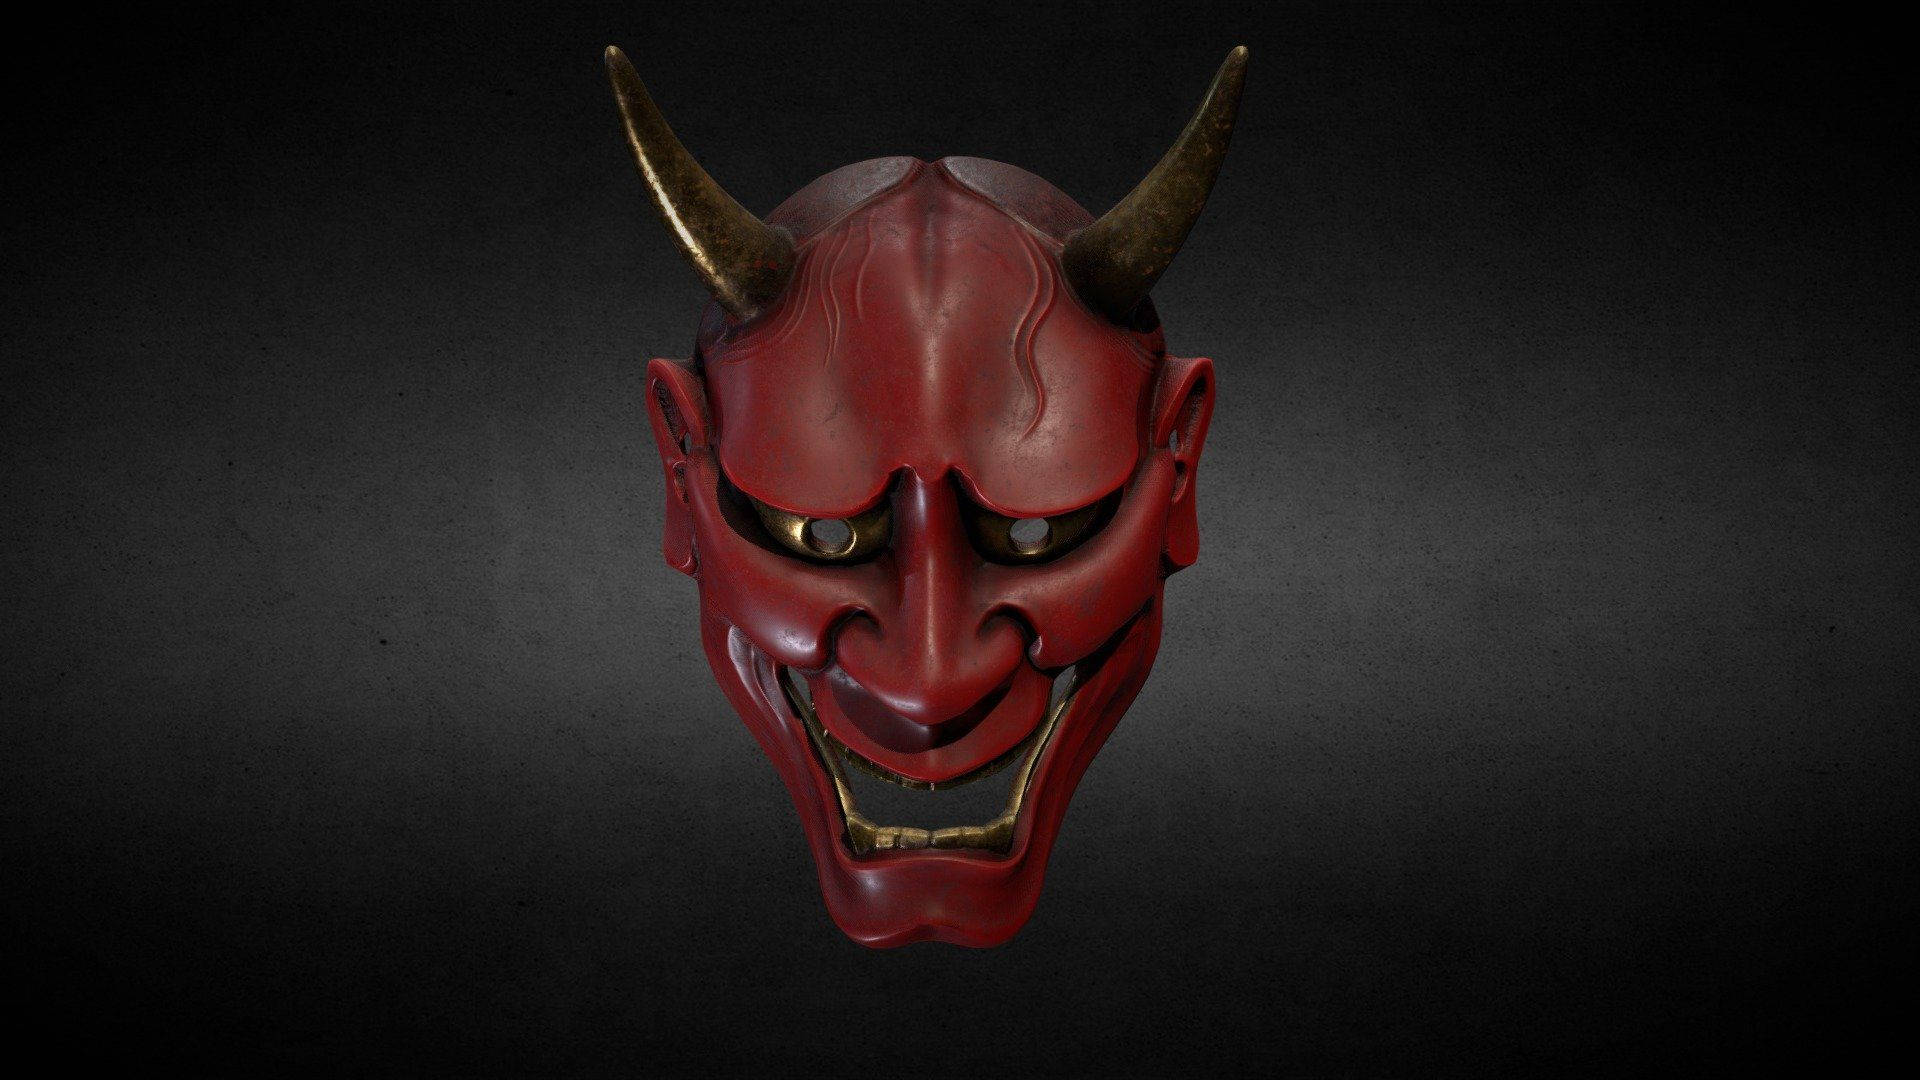 Intriguing Red Oni Mask - Symbol Of Japanese Mythology Background